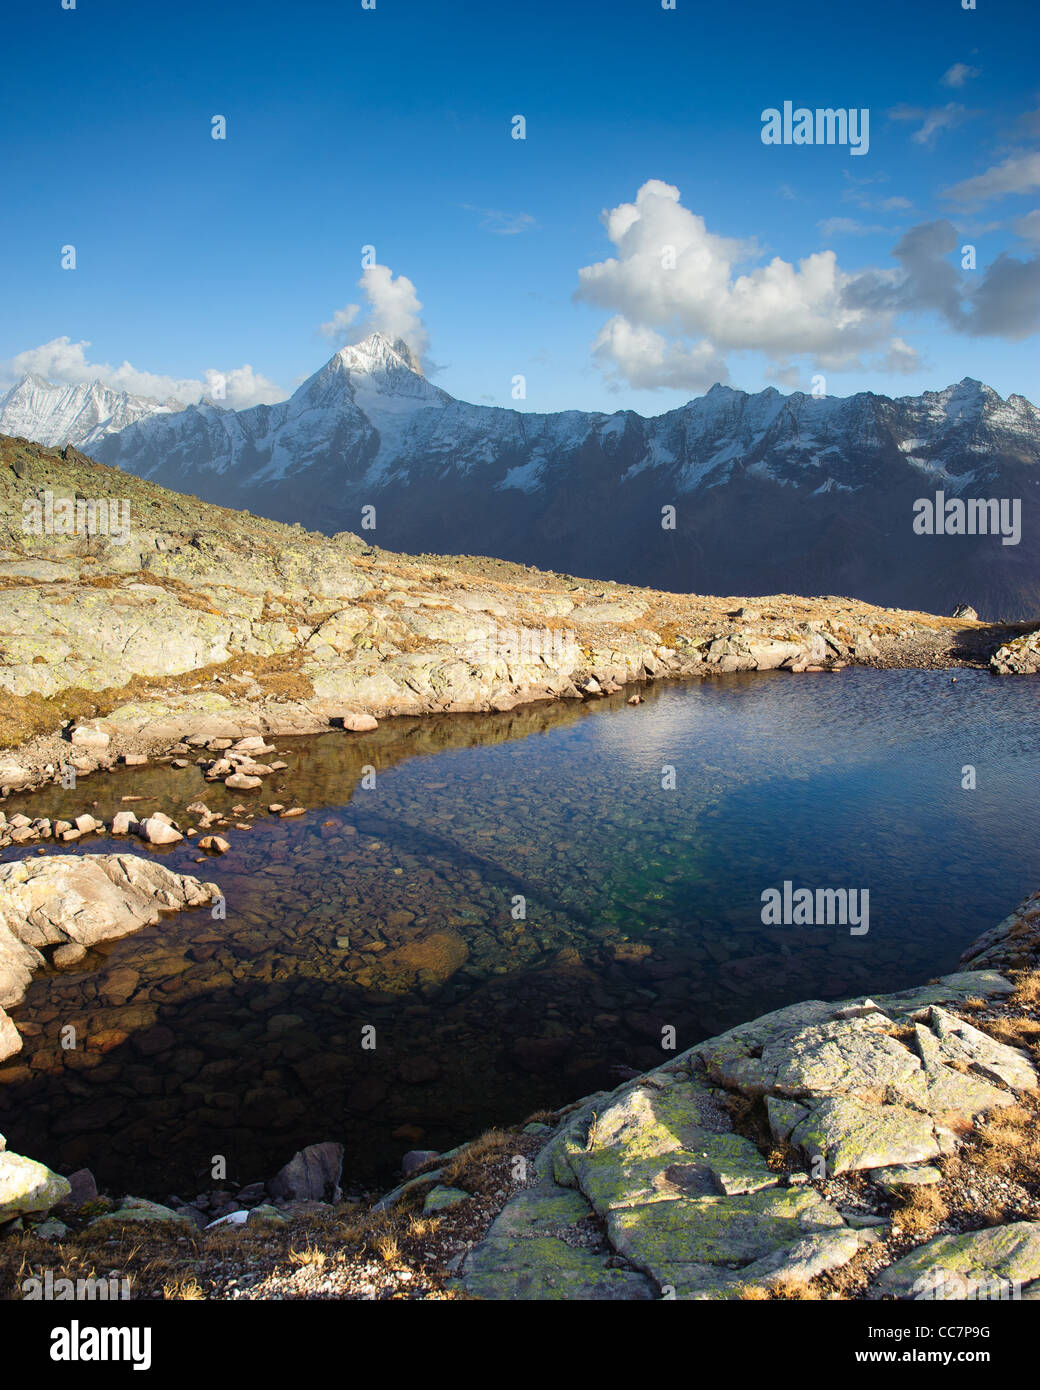 Bietschorn pic de montagne se reflétant dans un petit lac, Loetschenpass, Valais, Suisse Banque D'Images